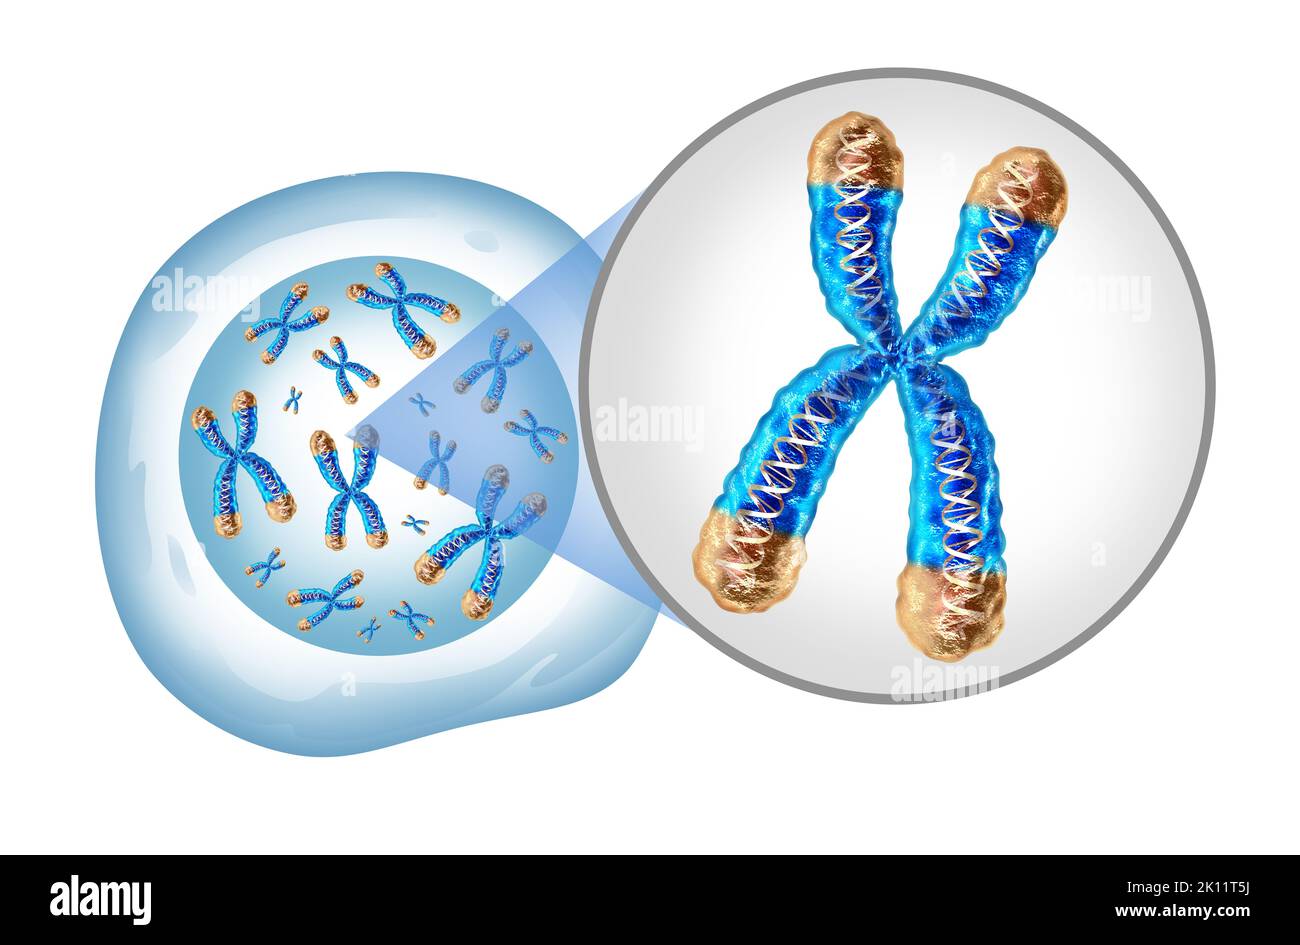 Cromosoma y núcleo celular con concepto de telómero y ADN para una estructura x de biología humana que contiene información genética del adn como símbolo médico. Foto de stock